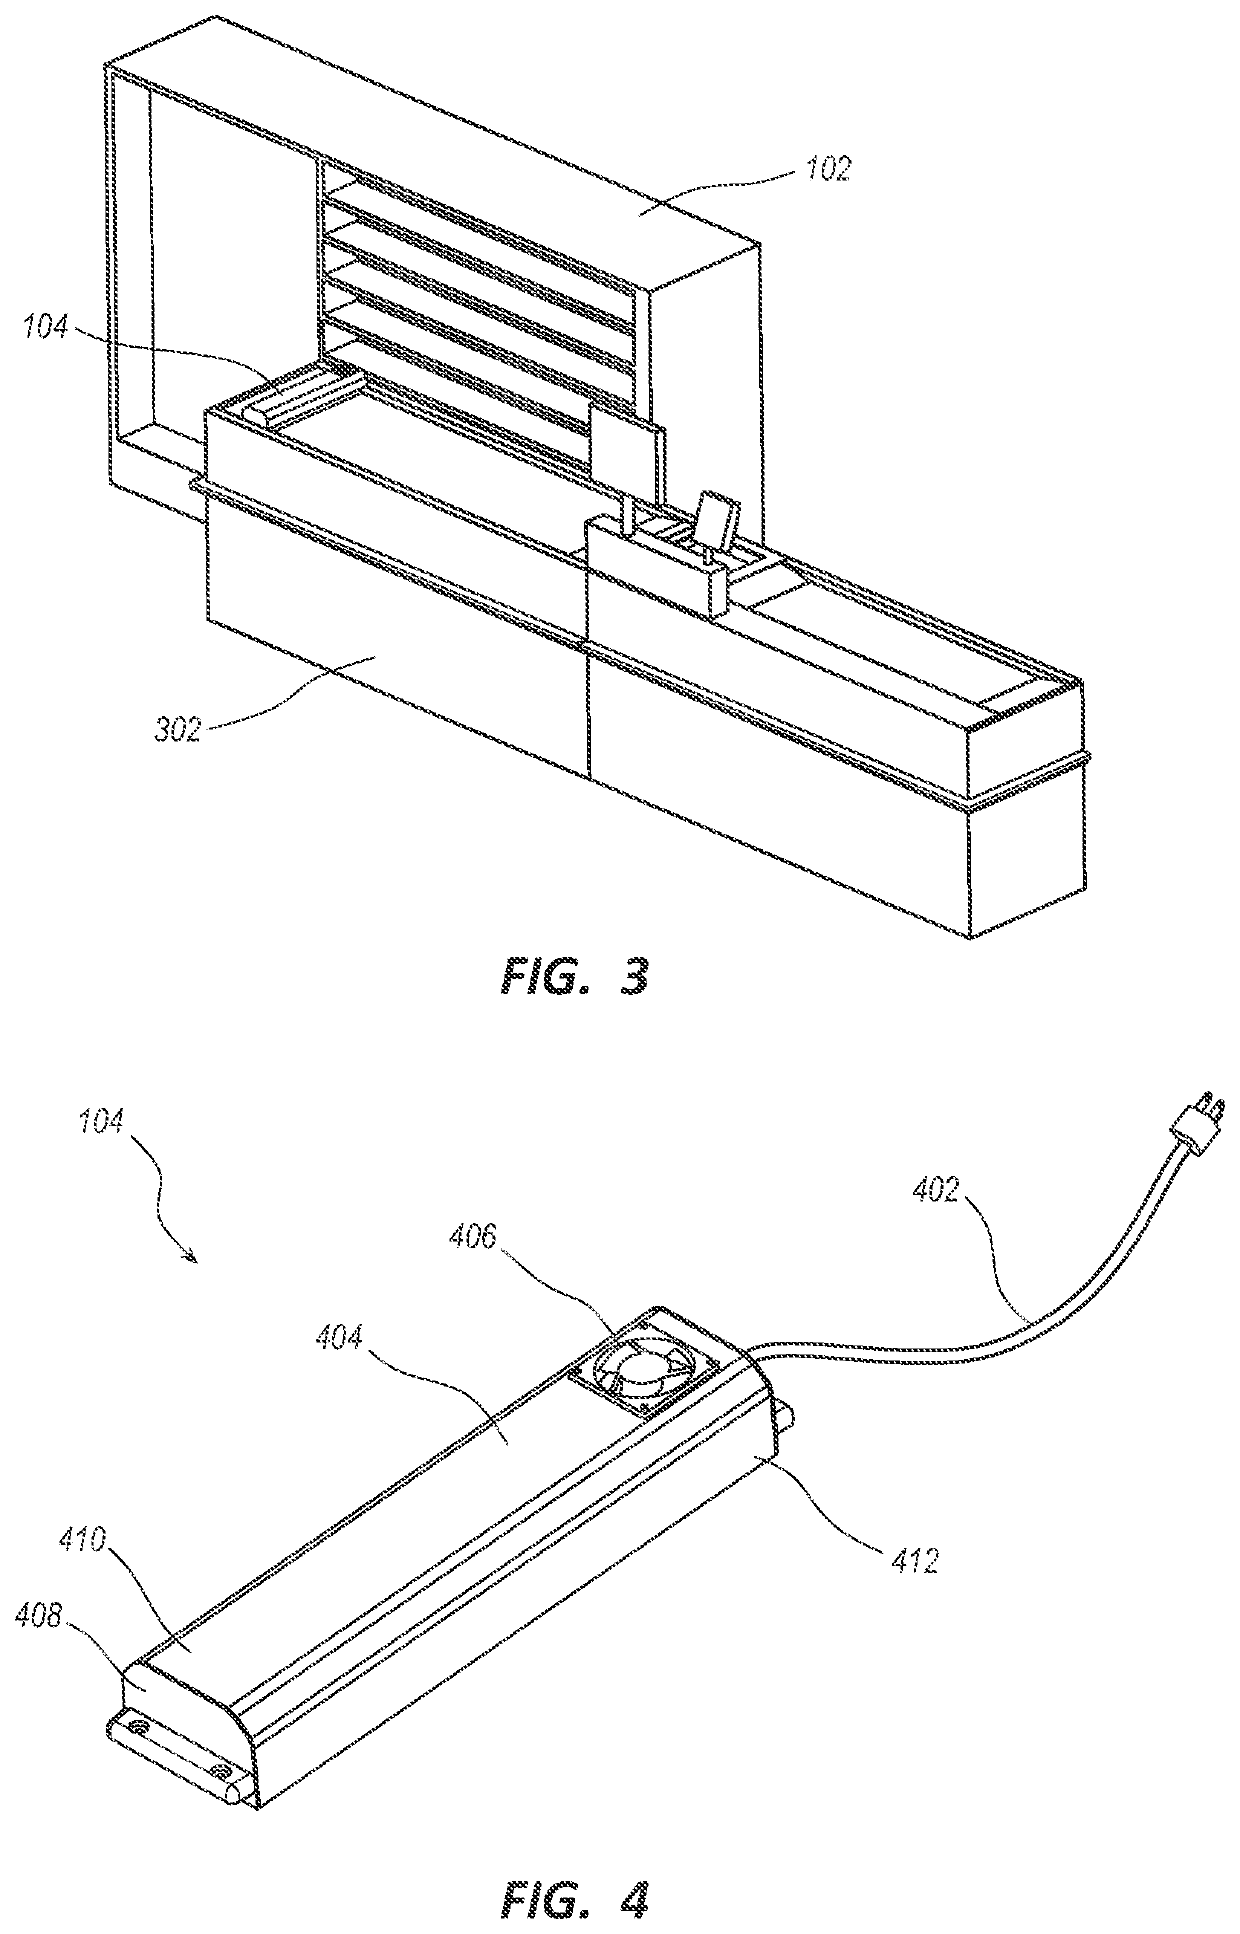 Conveyor belt sterilization apparatus and method